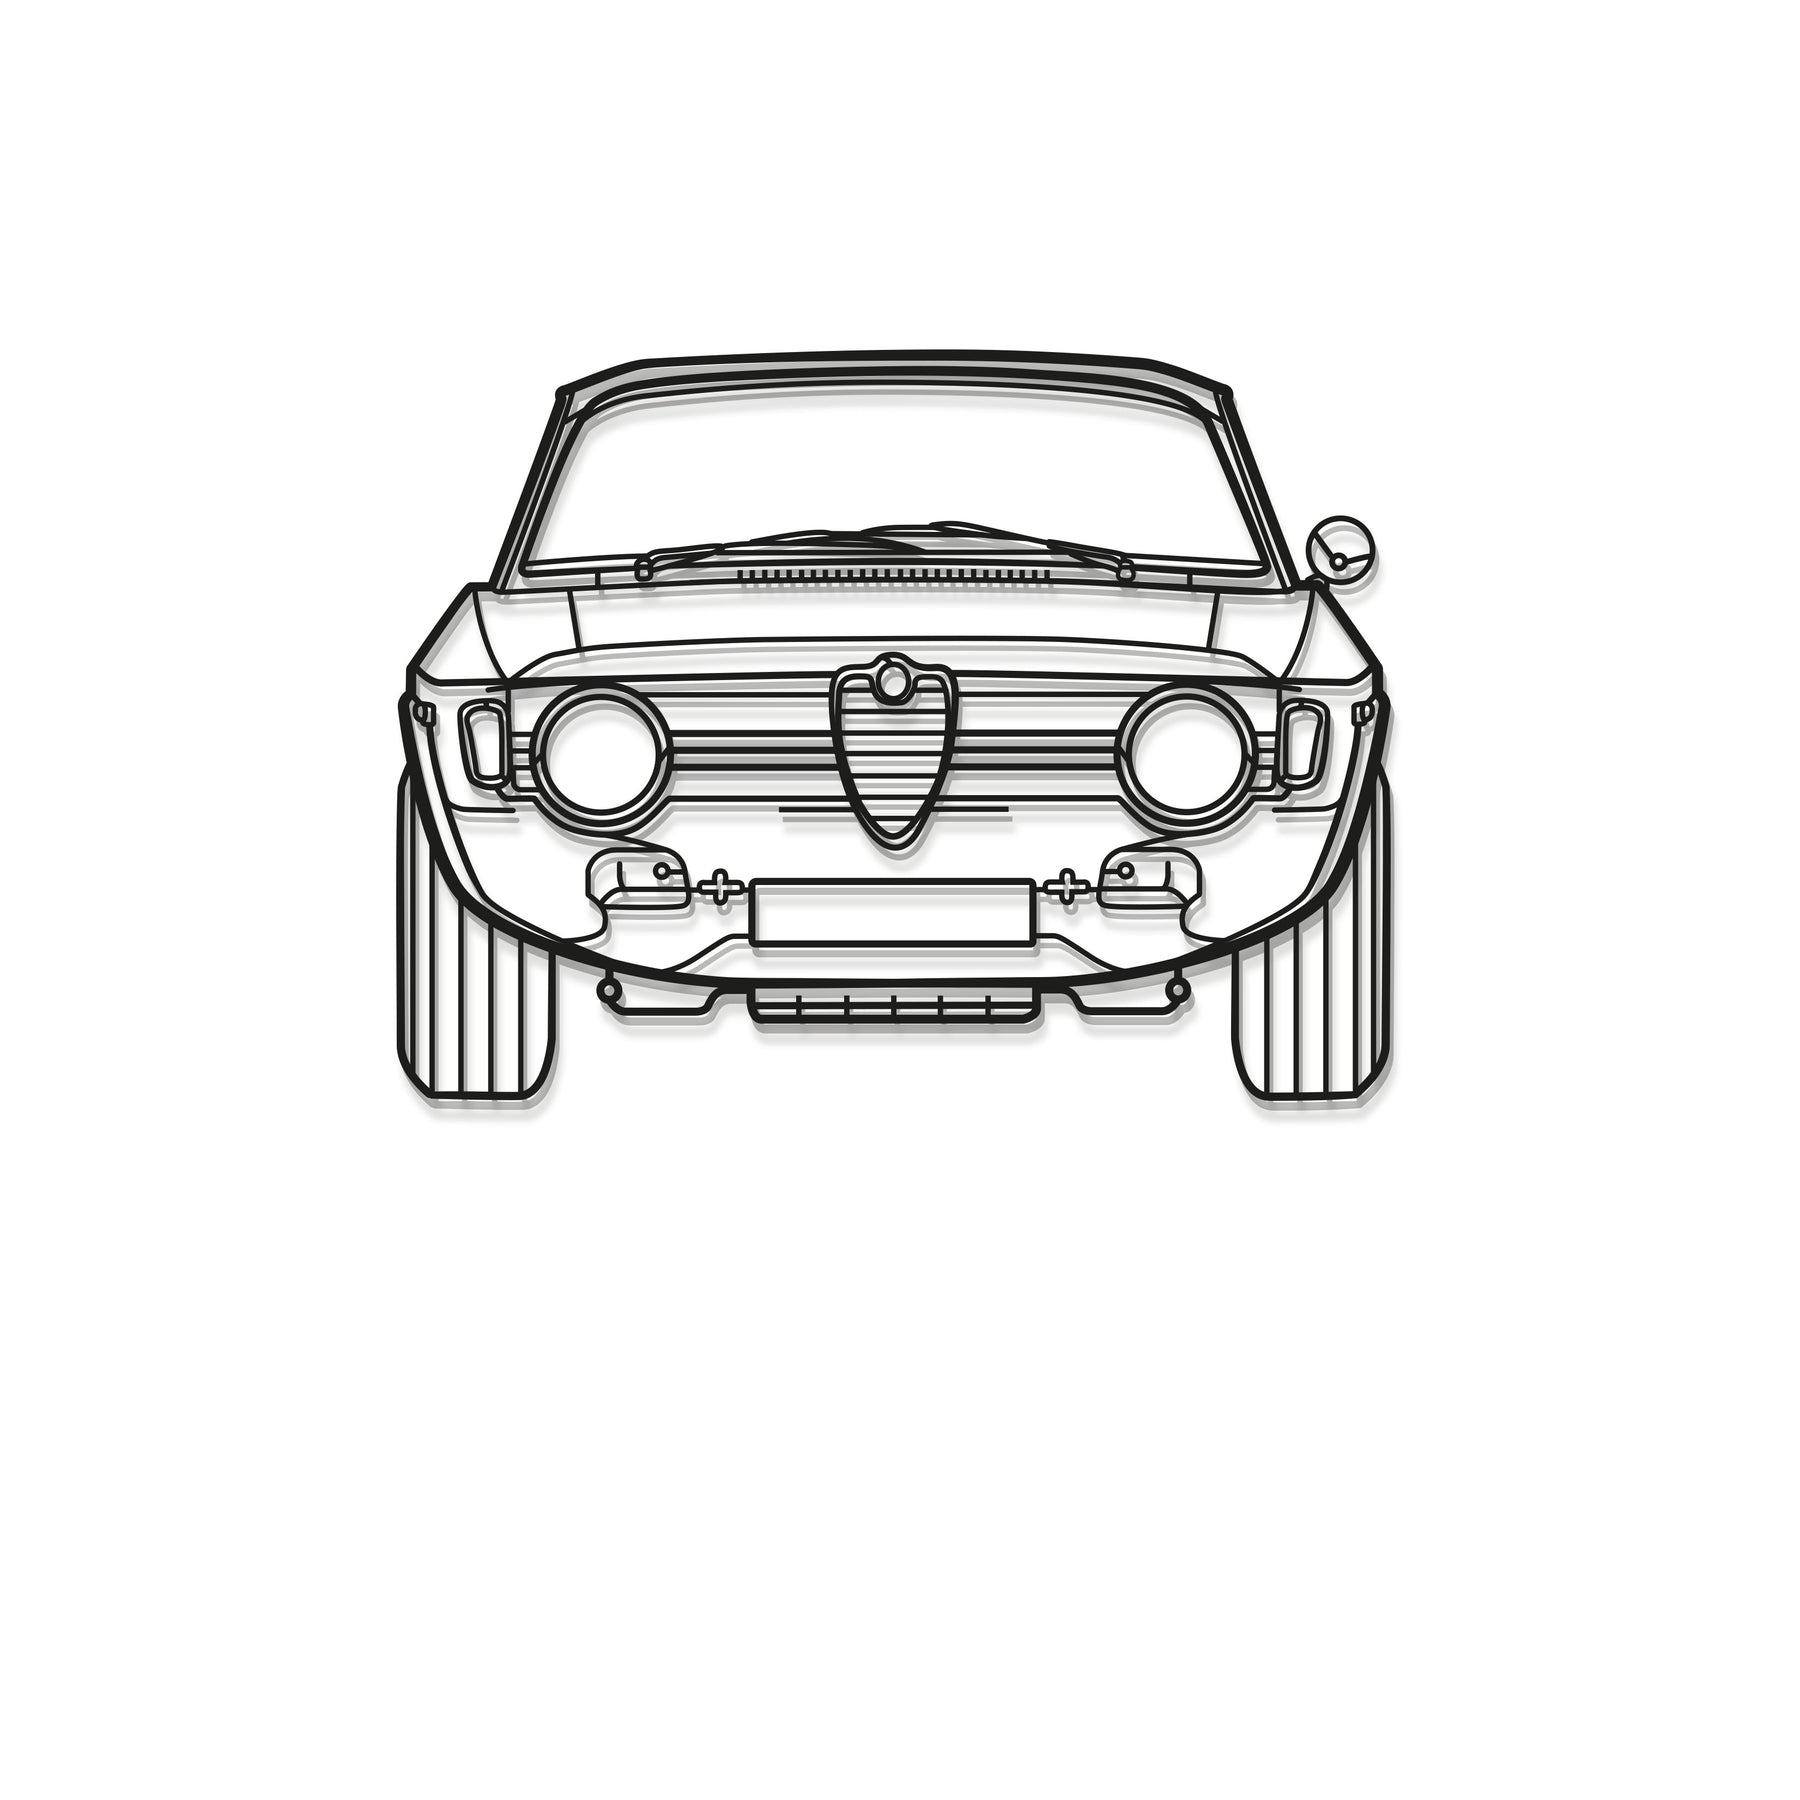 1967 Giulia Front Metal Car Wall Art - MT0092